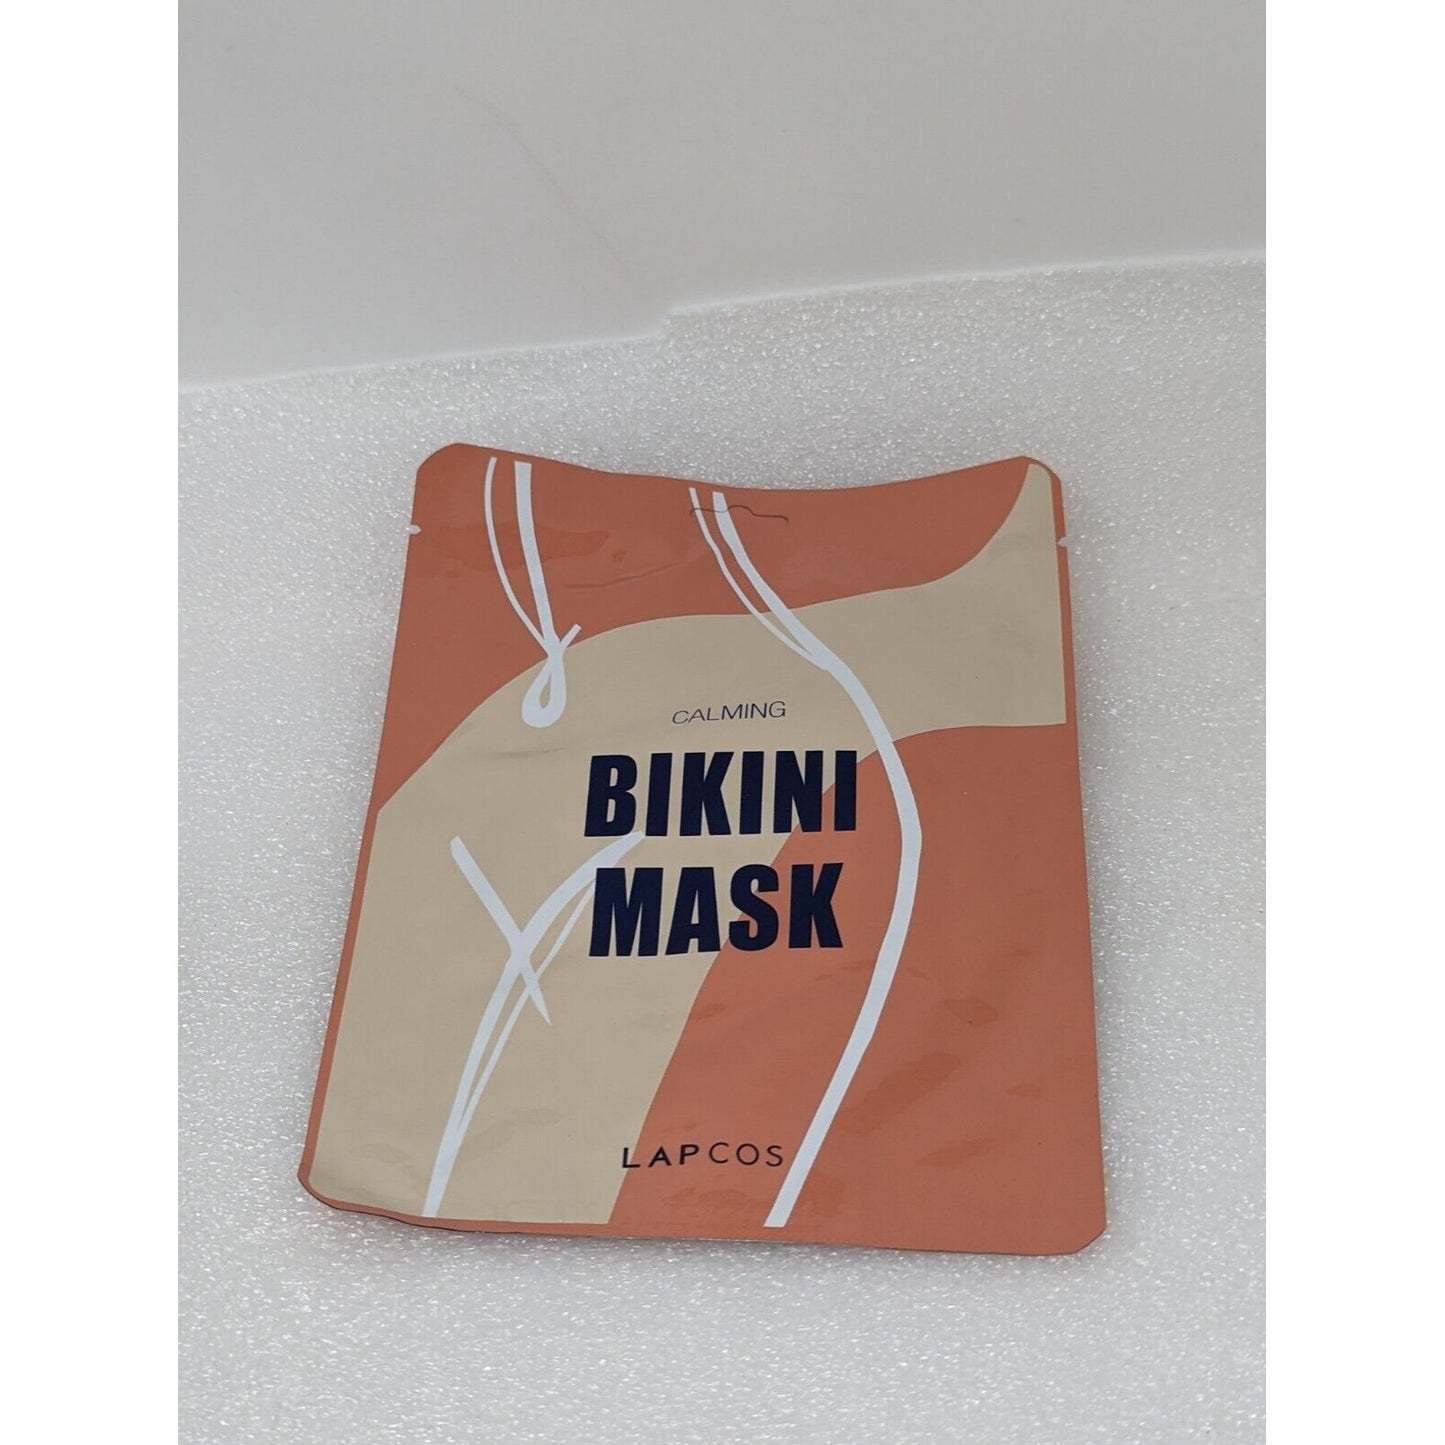 Lapcos Calming Bikini Mask Single